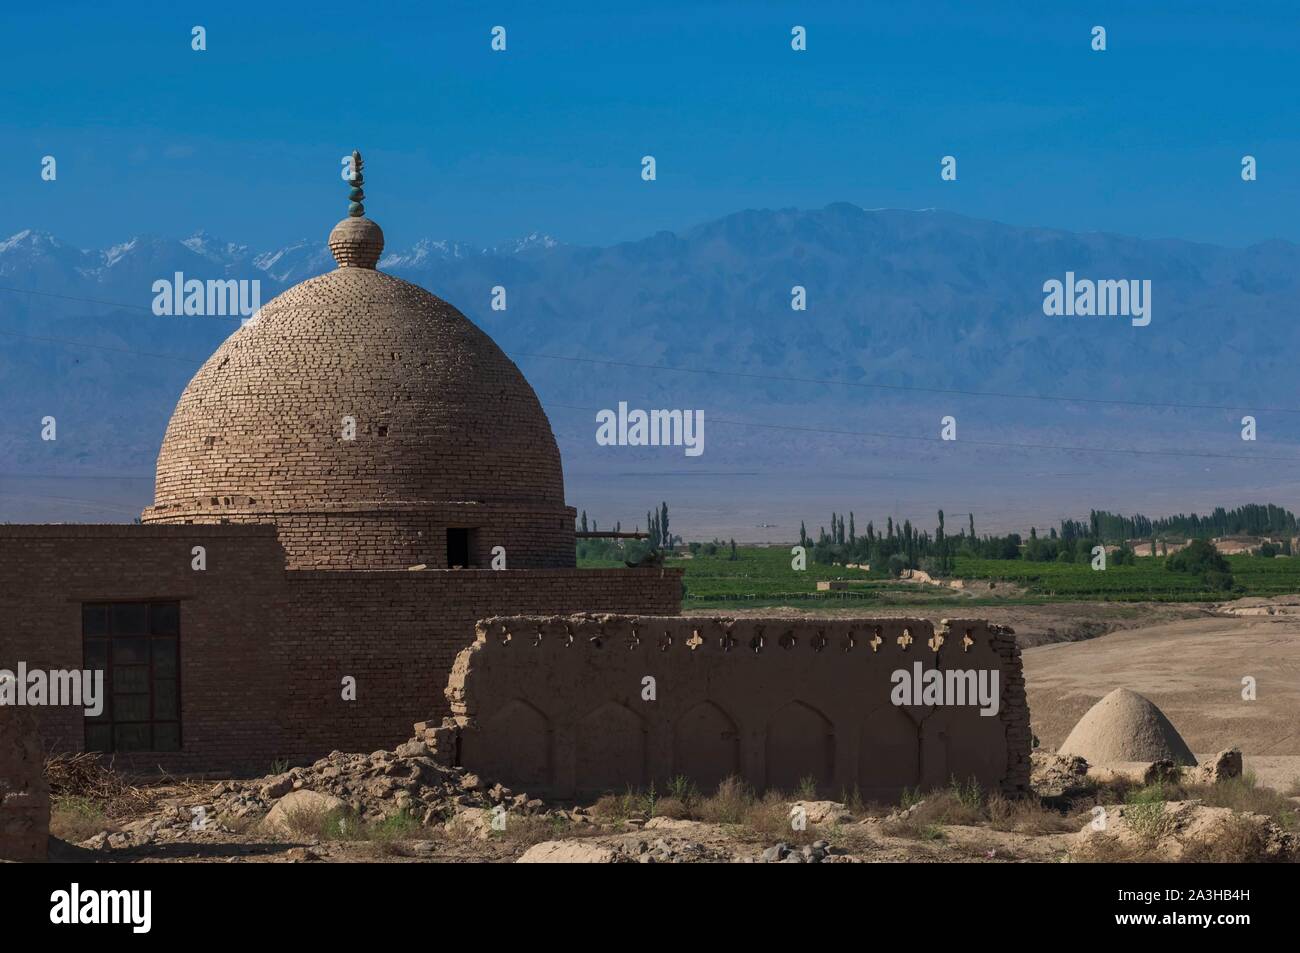 China, Xinjiang autonomous region, Turfan or Turpan, grape valley Stock Photo